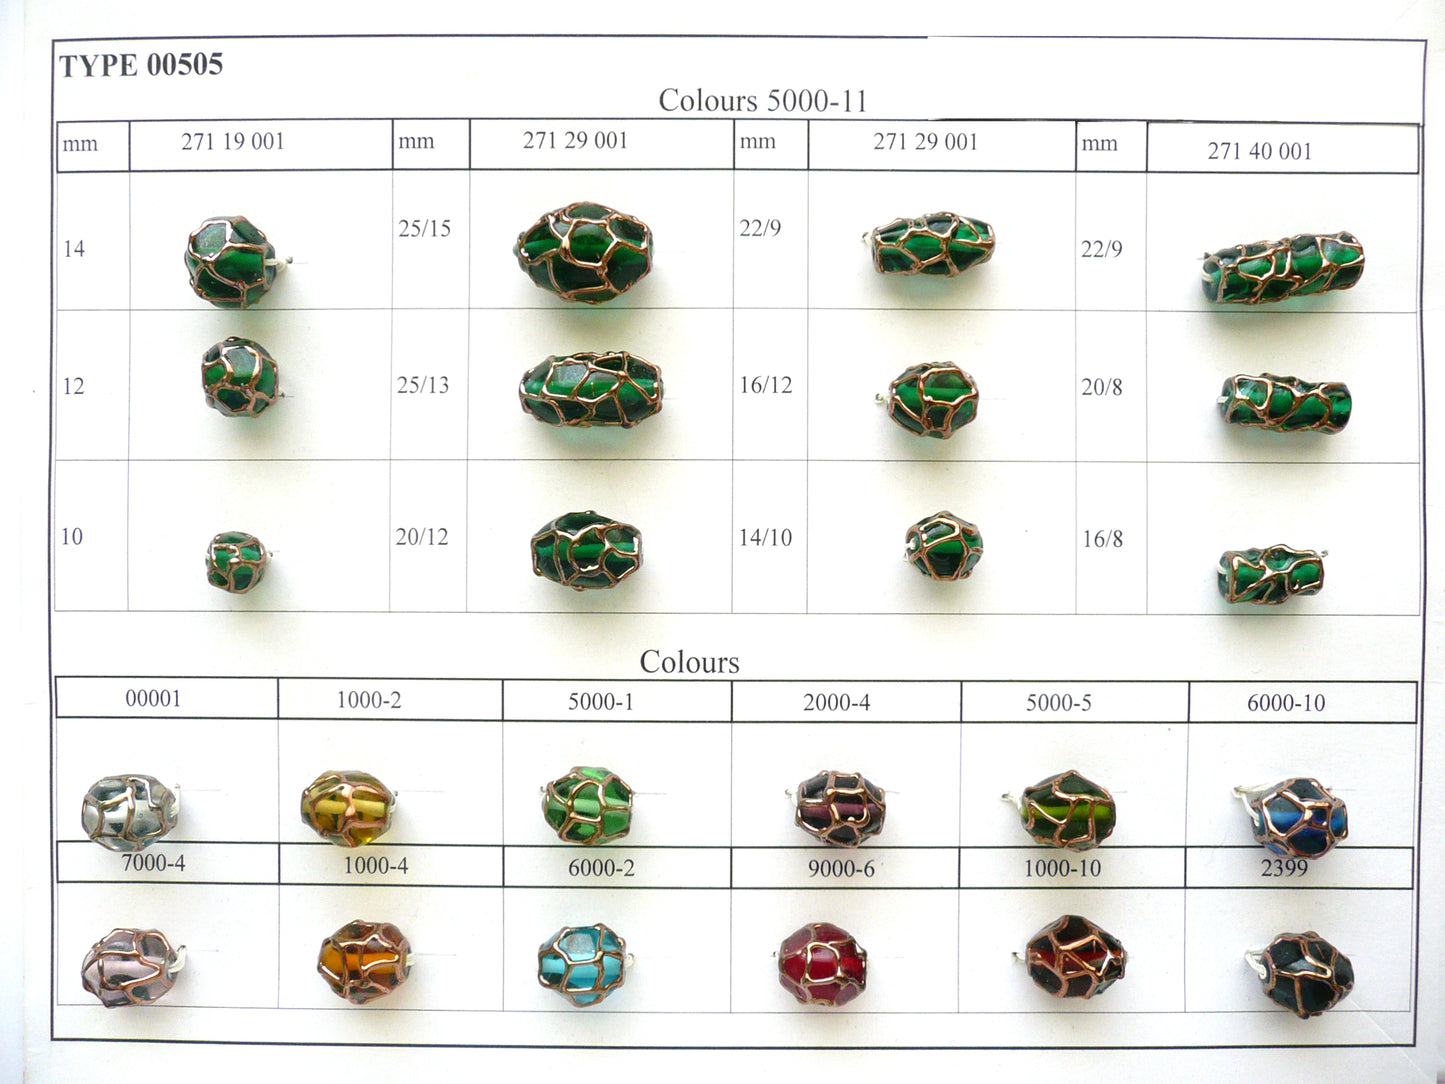 30 pcs Lampwork Beads 505 / Cylinder (271-40-001), Handmade, Preciosa Glass, Czech Republic